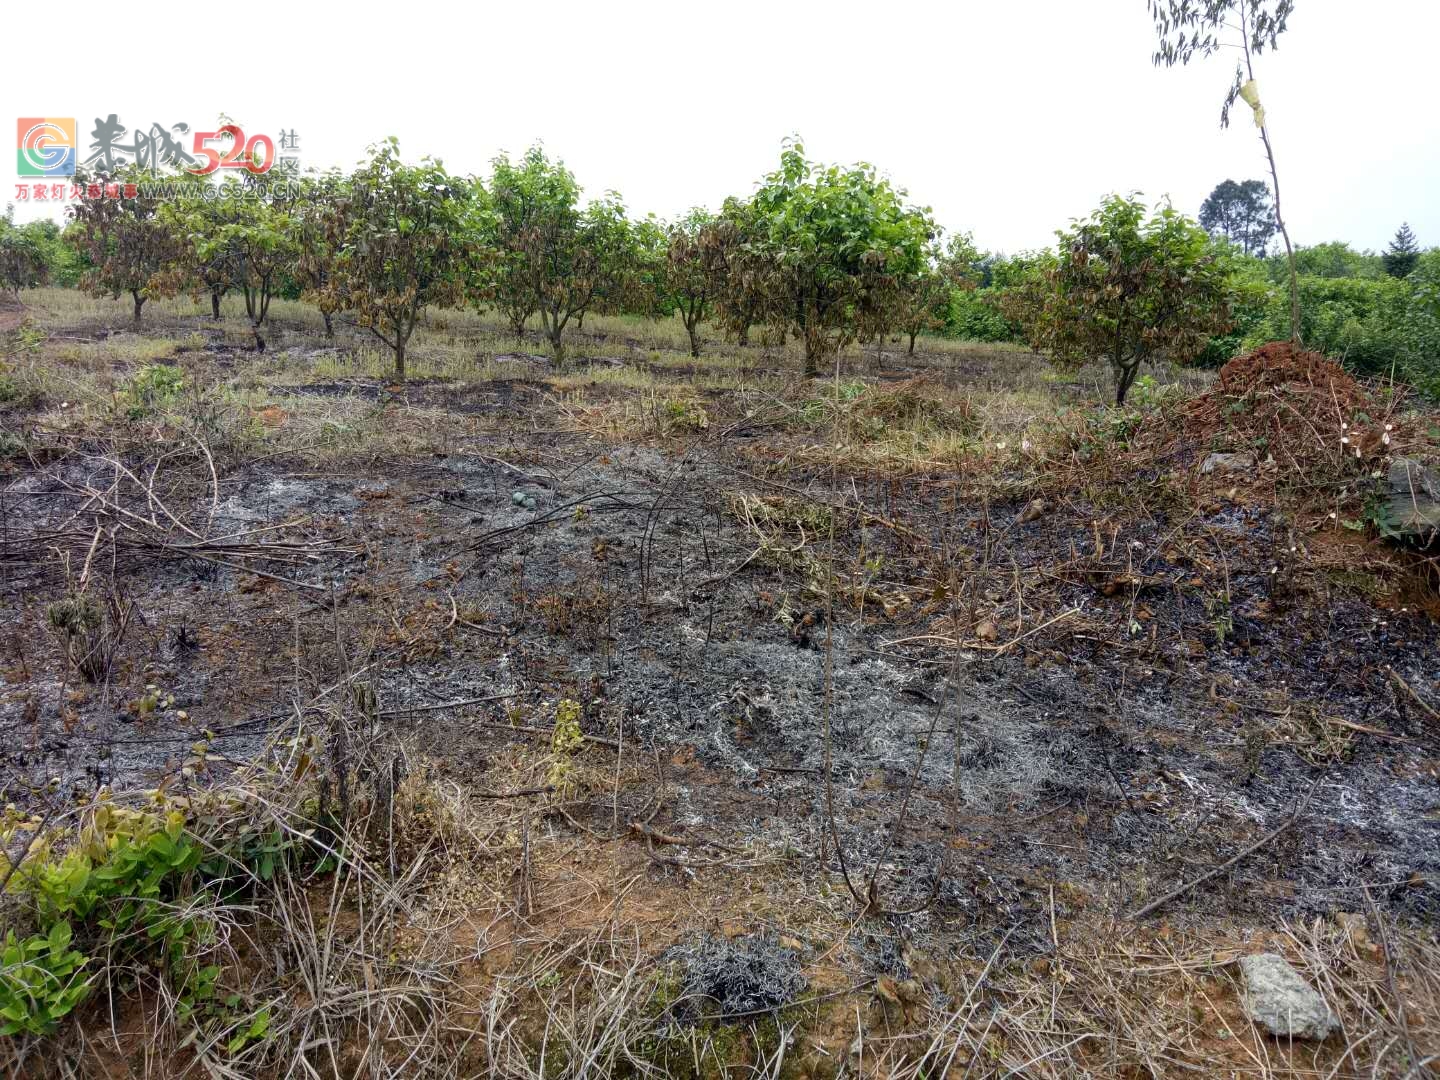 昨天下午三点钟左右 ,英家洞柿子树全被烧了。873 / 作者:希灵容梅 / 帖子ID:260604